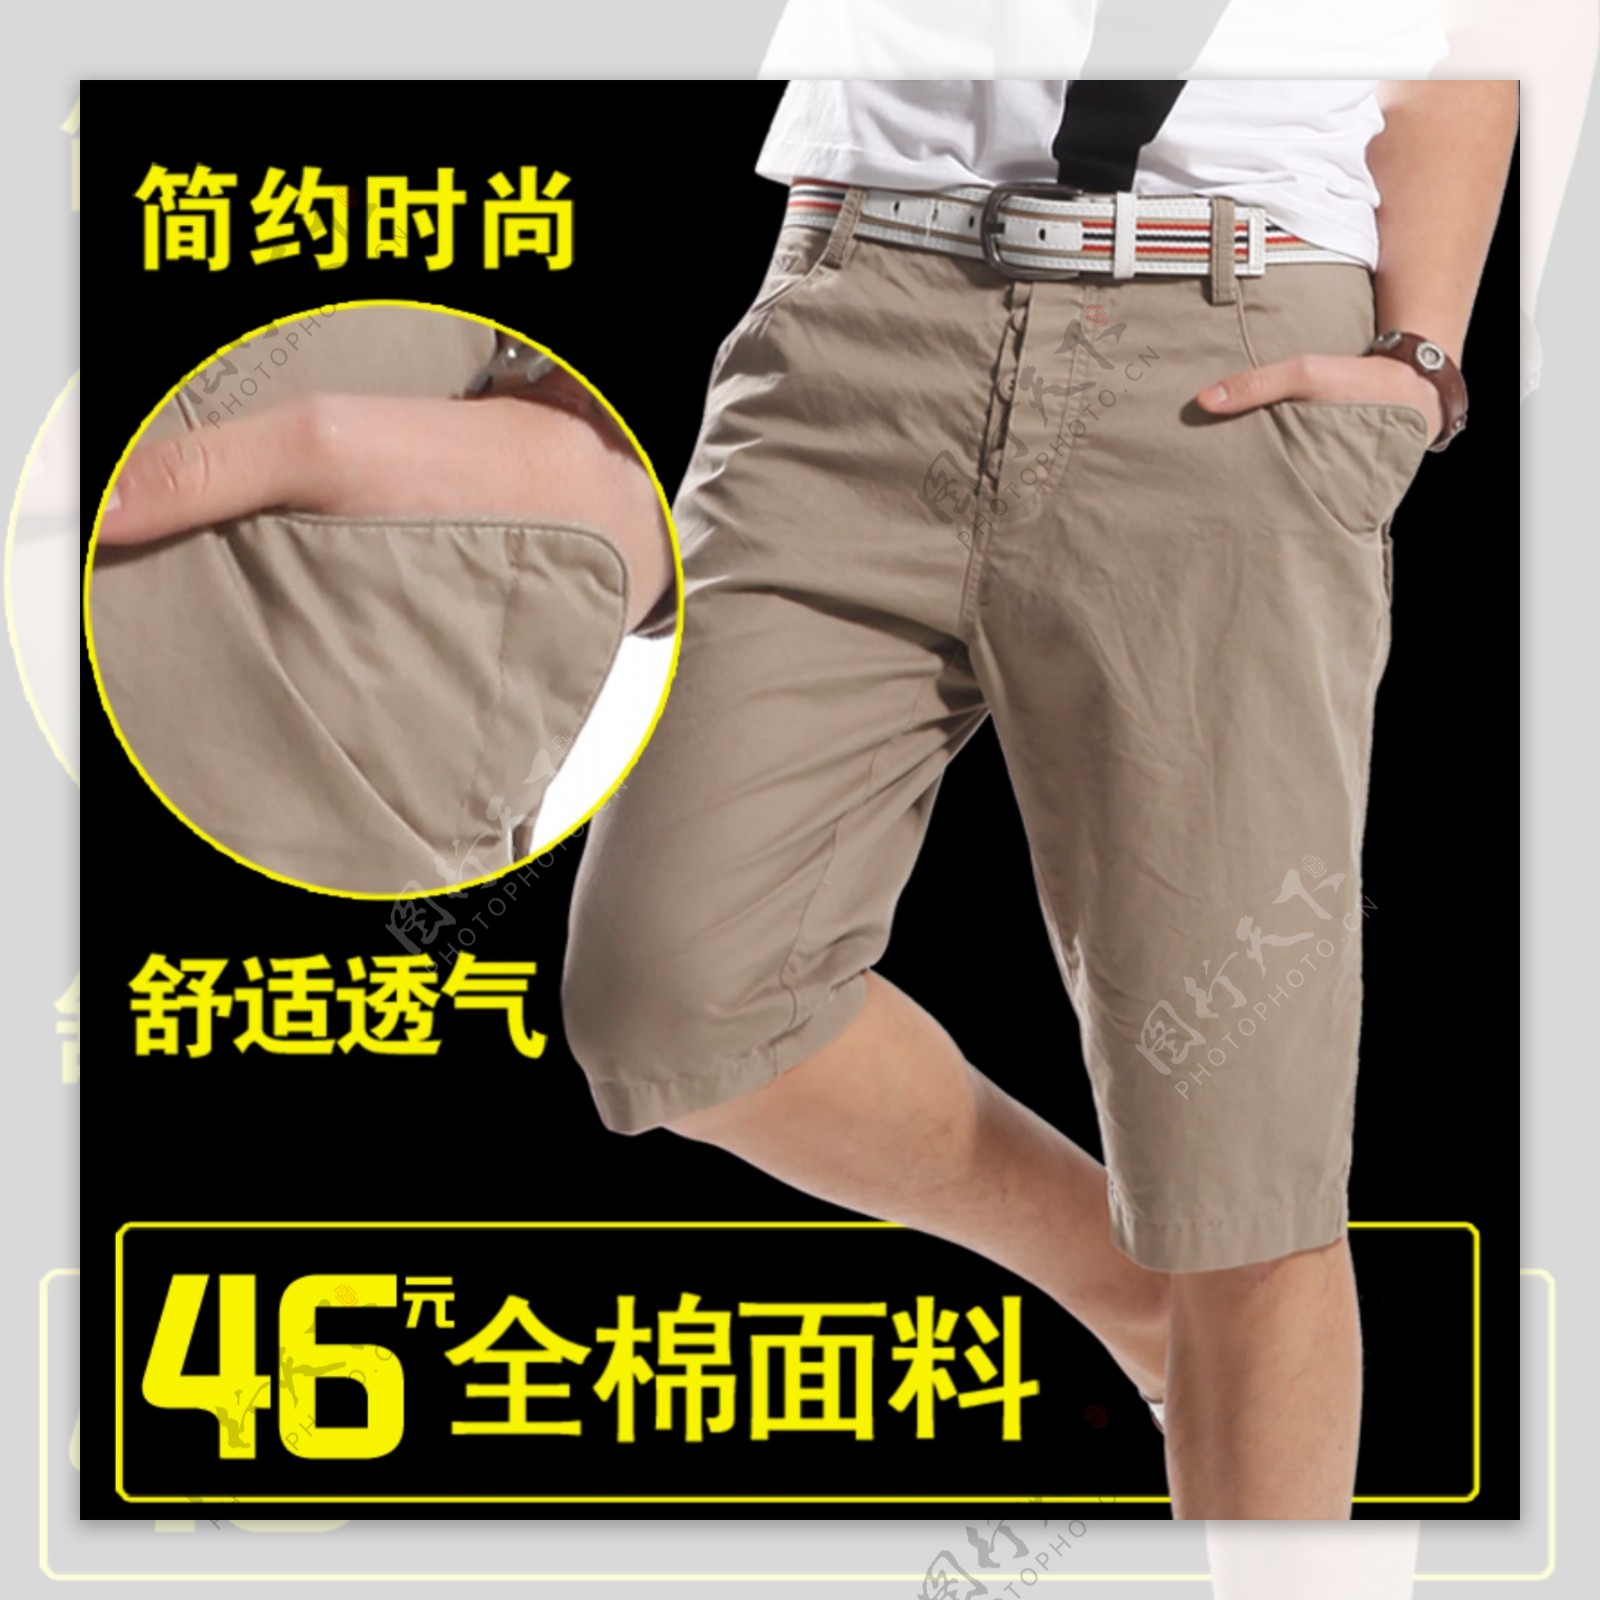 淘宝时尚短裤促销主图